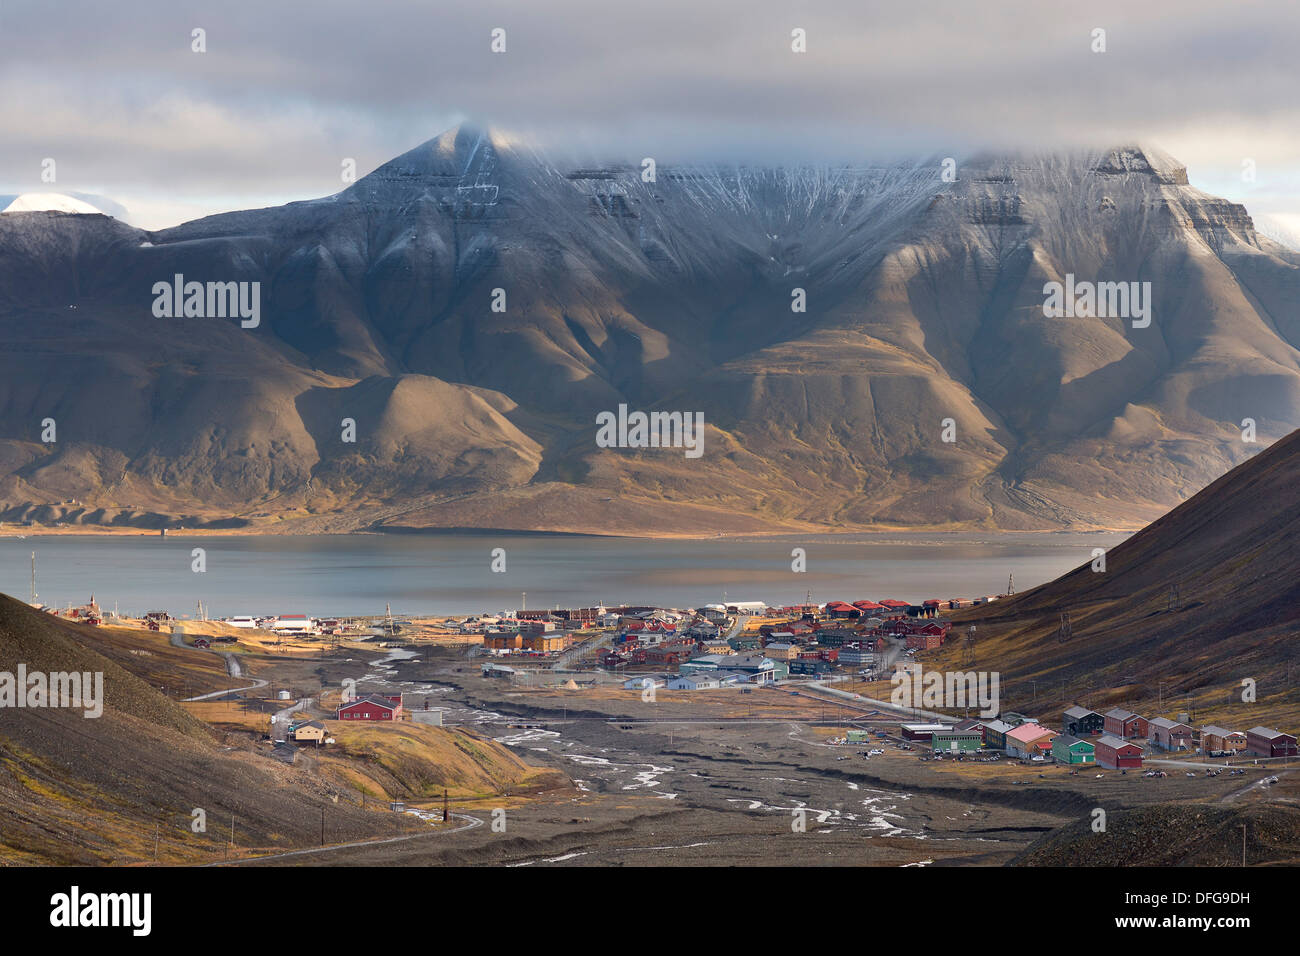 Ville de Longyearbyen, Longyearbyen, l'île de Spitsbergen, Svalbard, archipel de Svalbard et Jan Mayen (Norvège) Banque D'Images